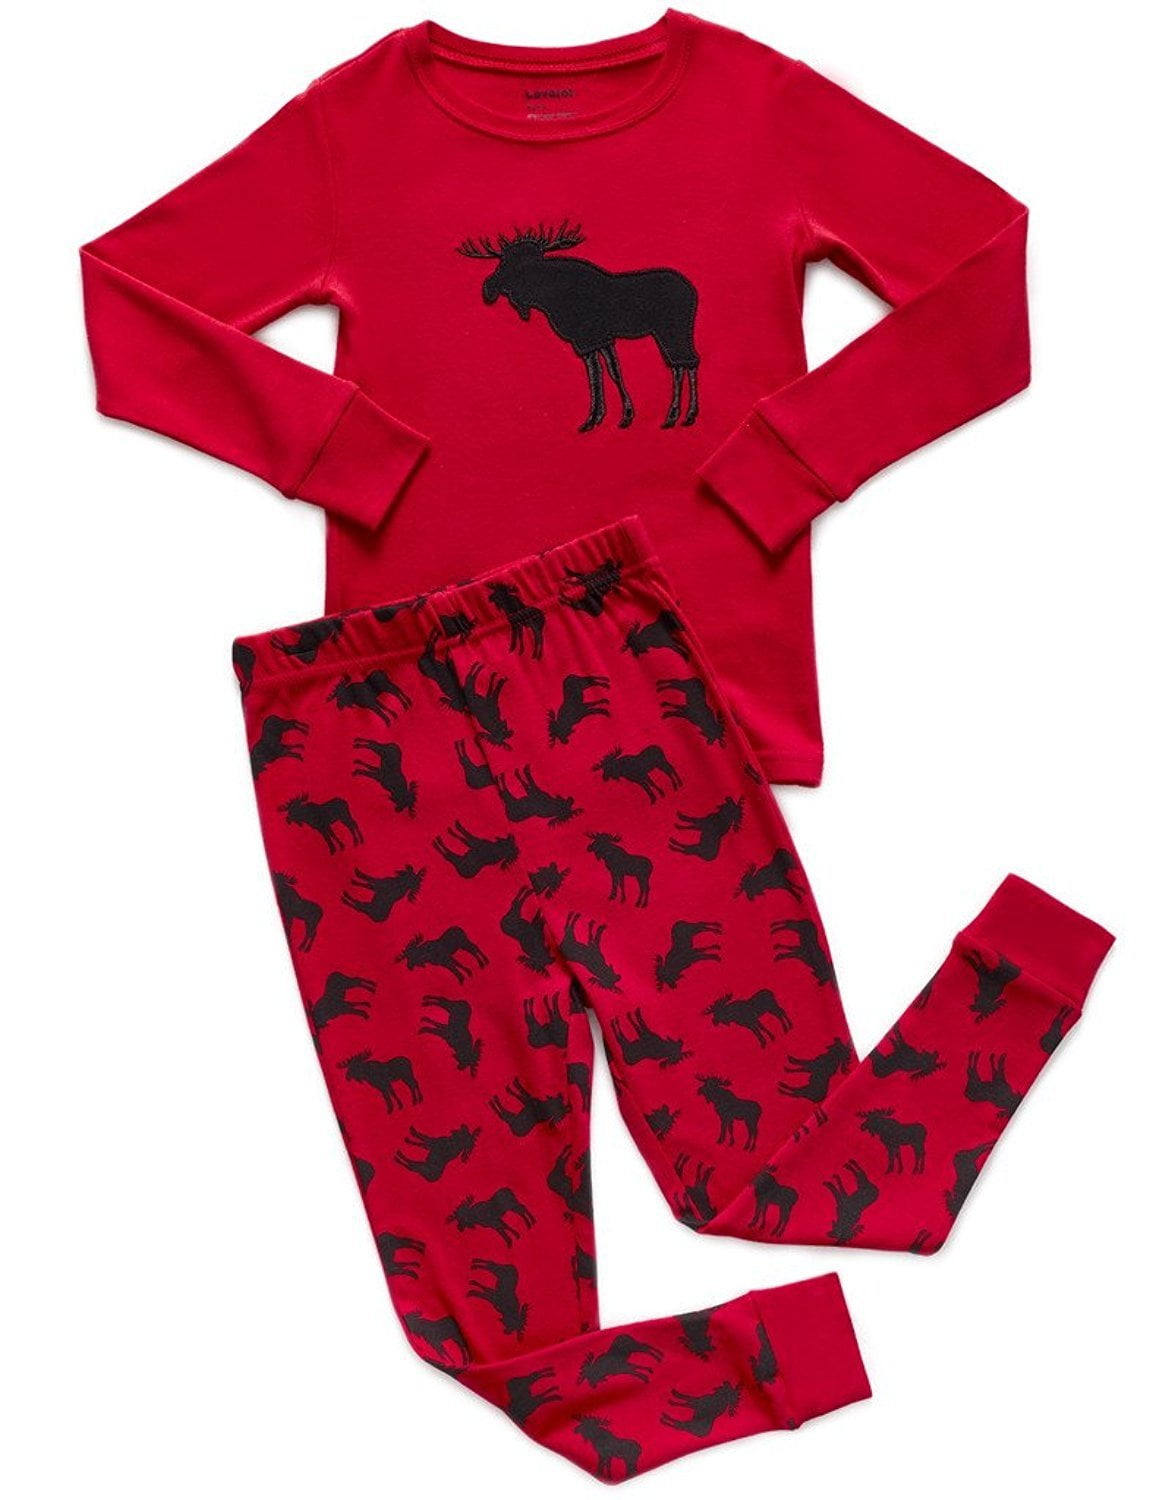 Leveret Kids & Toddler Pajamas Boys Girls 2 Piece Pjs Set 100% Organic Cotton Sleepwear 12 Months-14 Years 